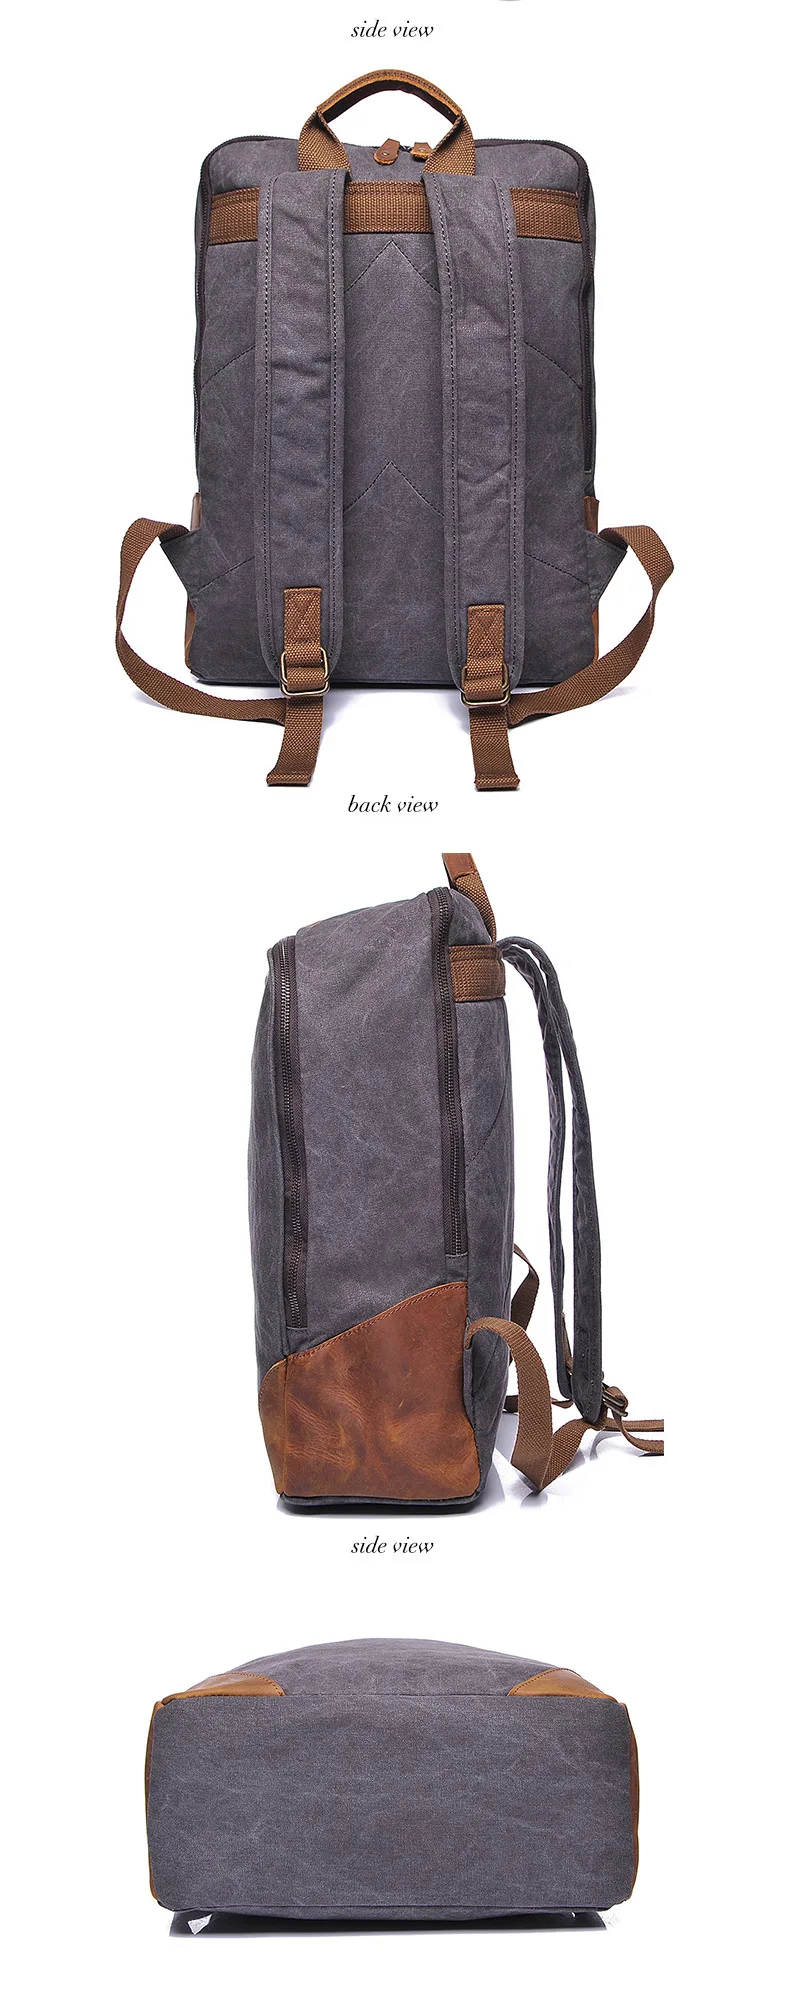 AETOO оригинальные модели Мужская сумка через плечо Ретро мужской холщовый рюкзак с первый слой кожи сумка напрямую с фабрики